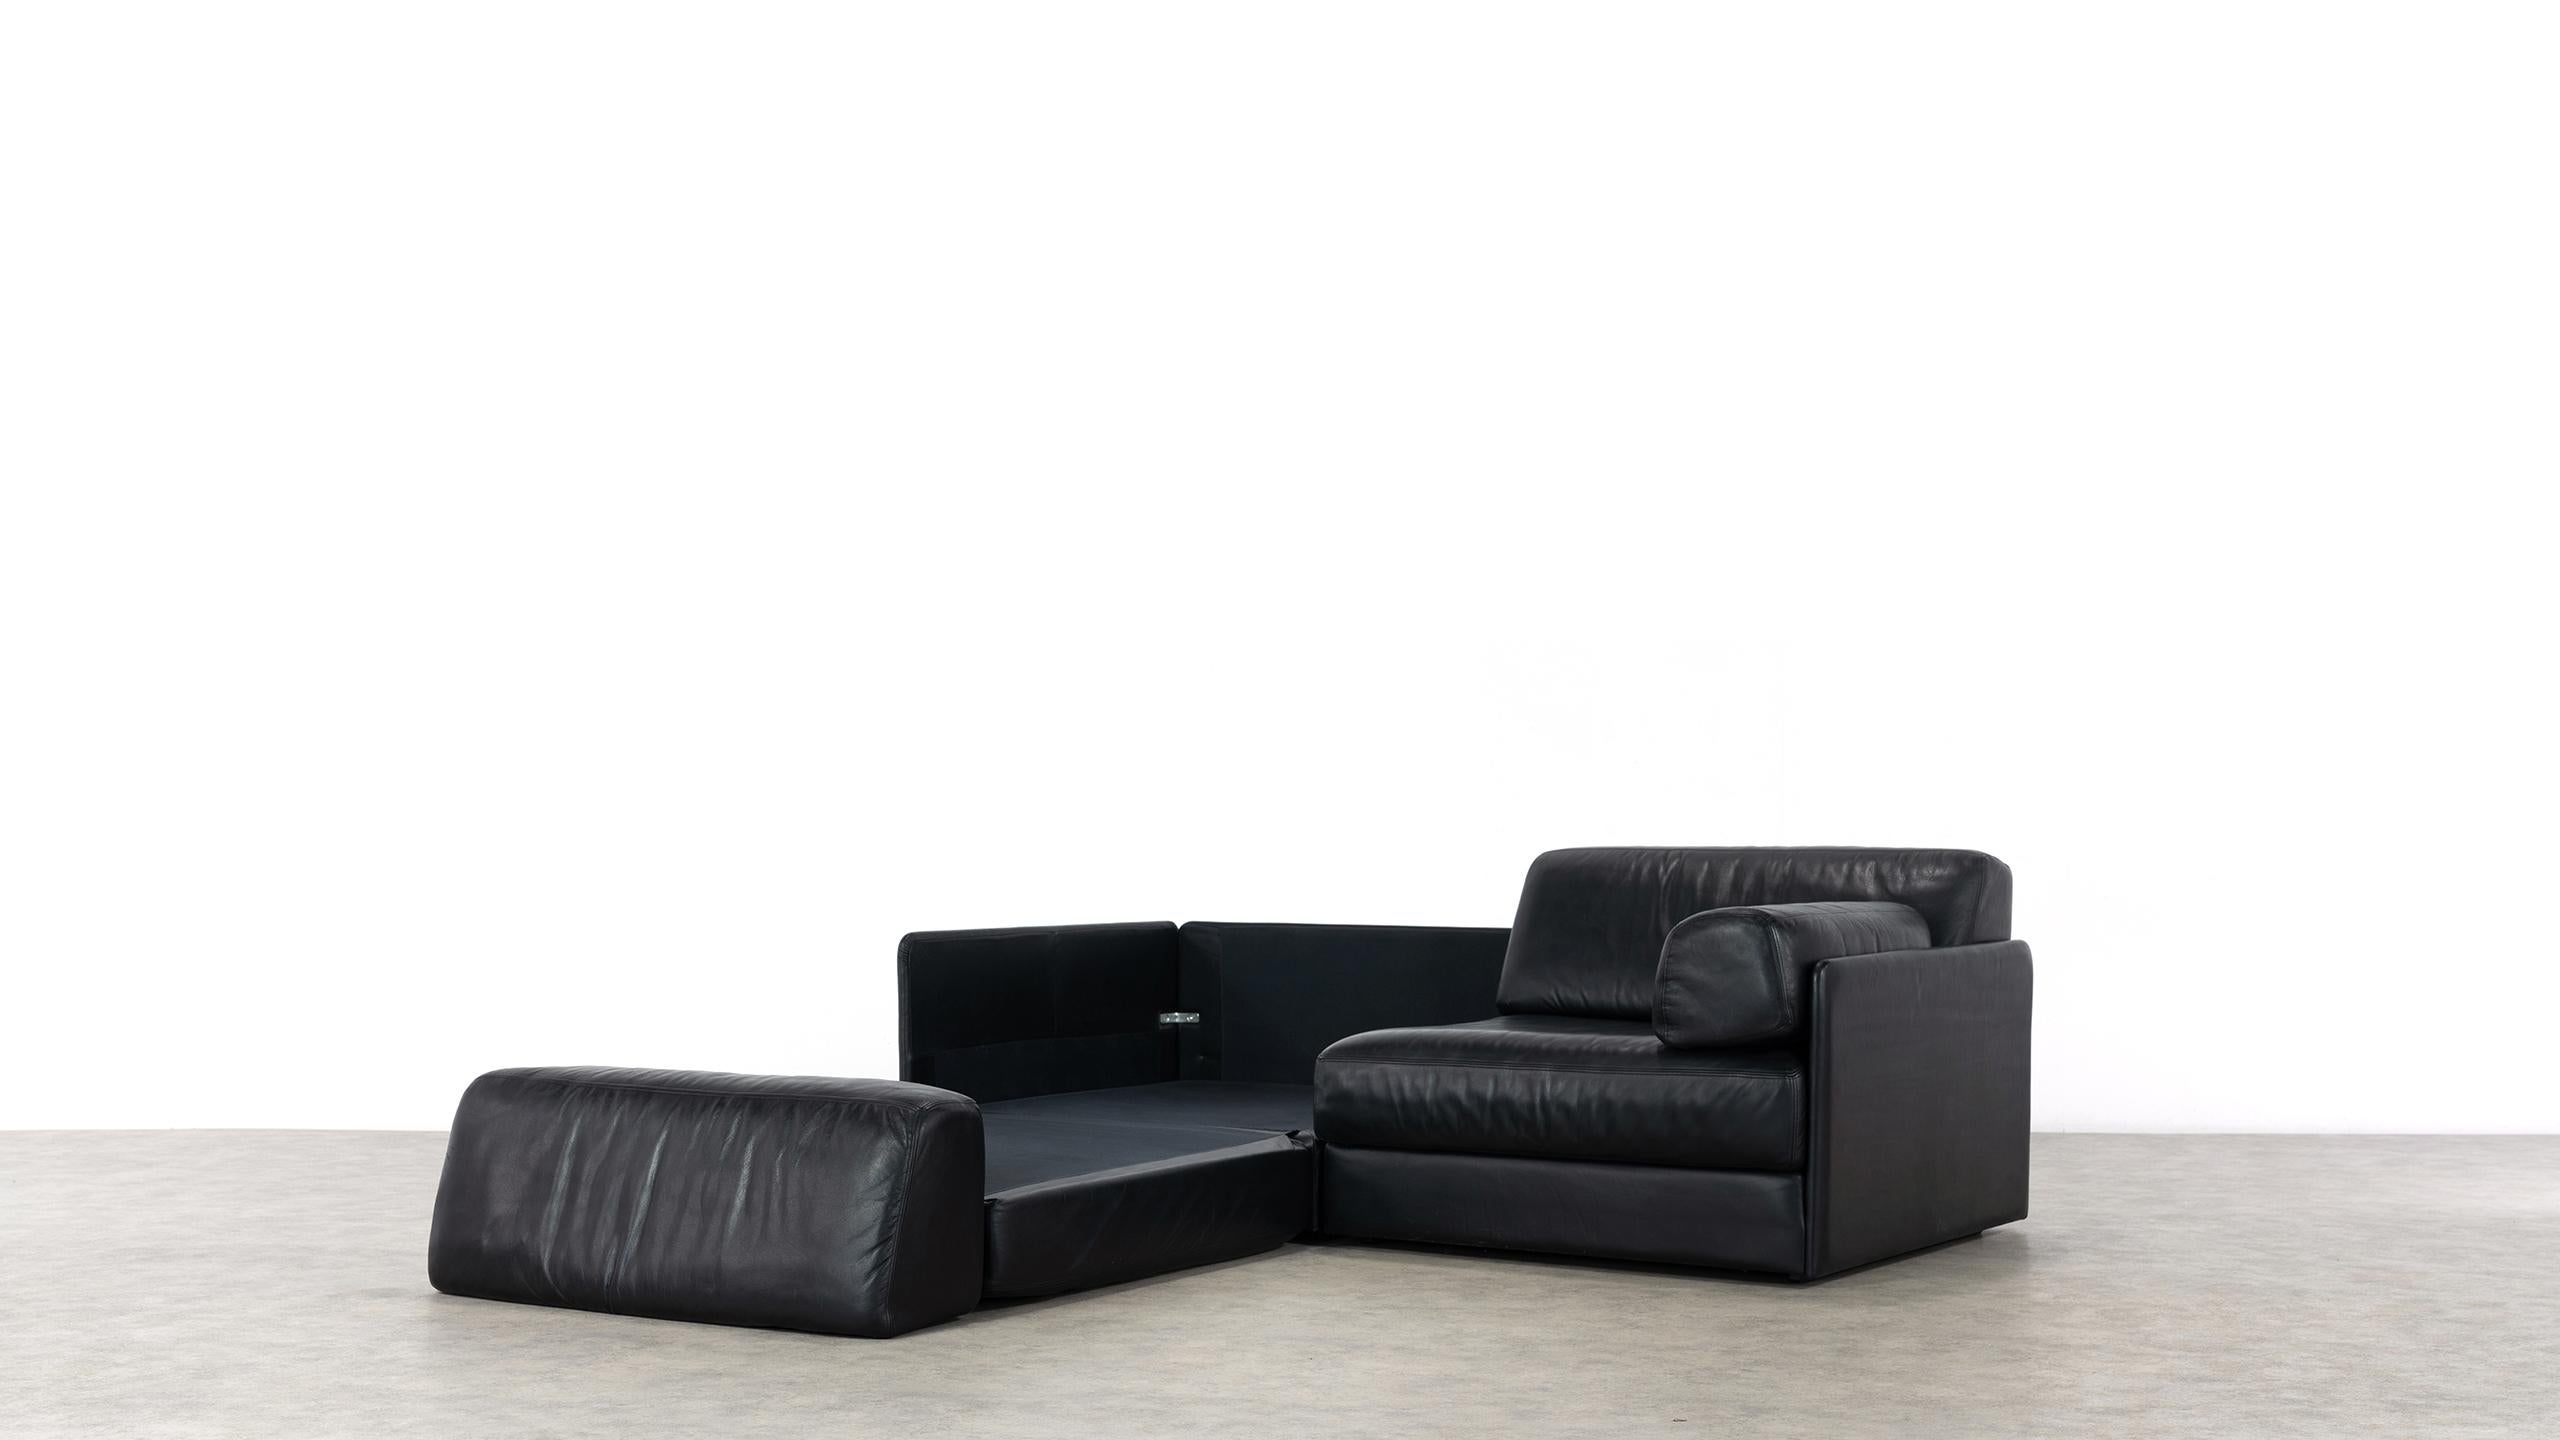 De Sede Ds76, Sofa & Daybed in Black Leather, 1972 by De Sede Design Team 9